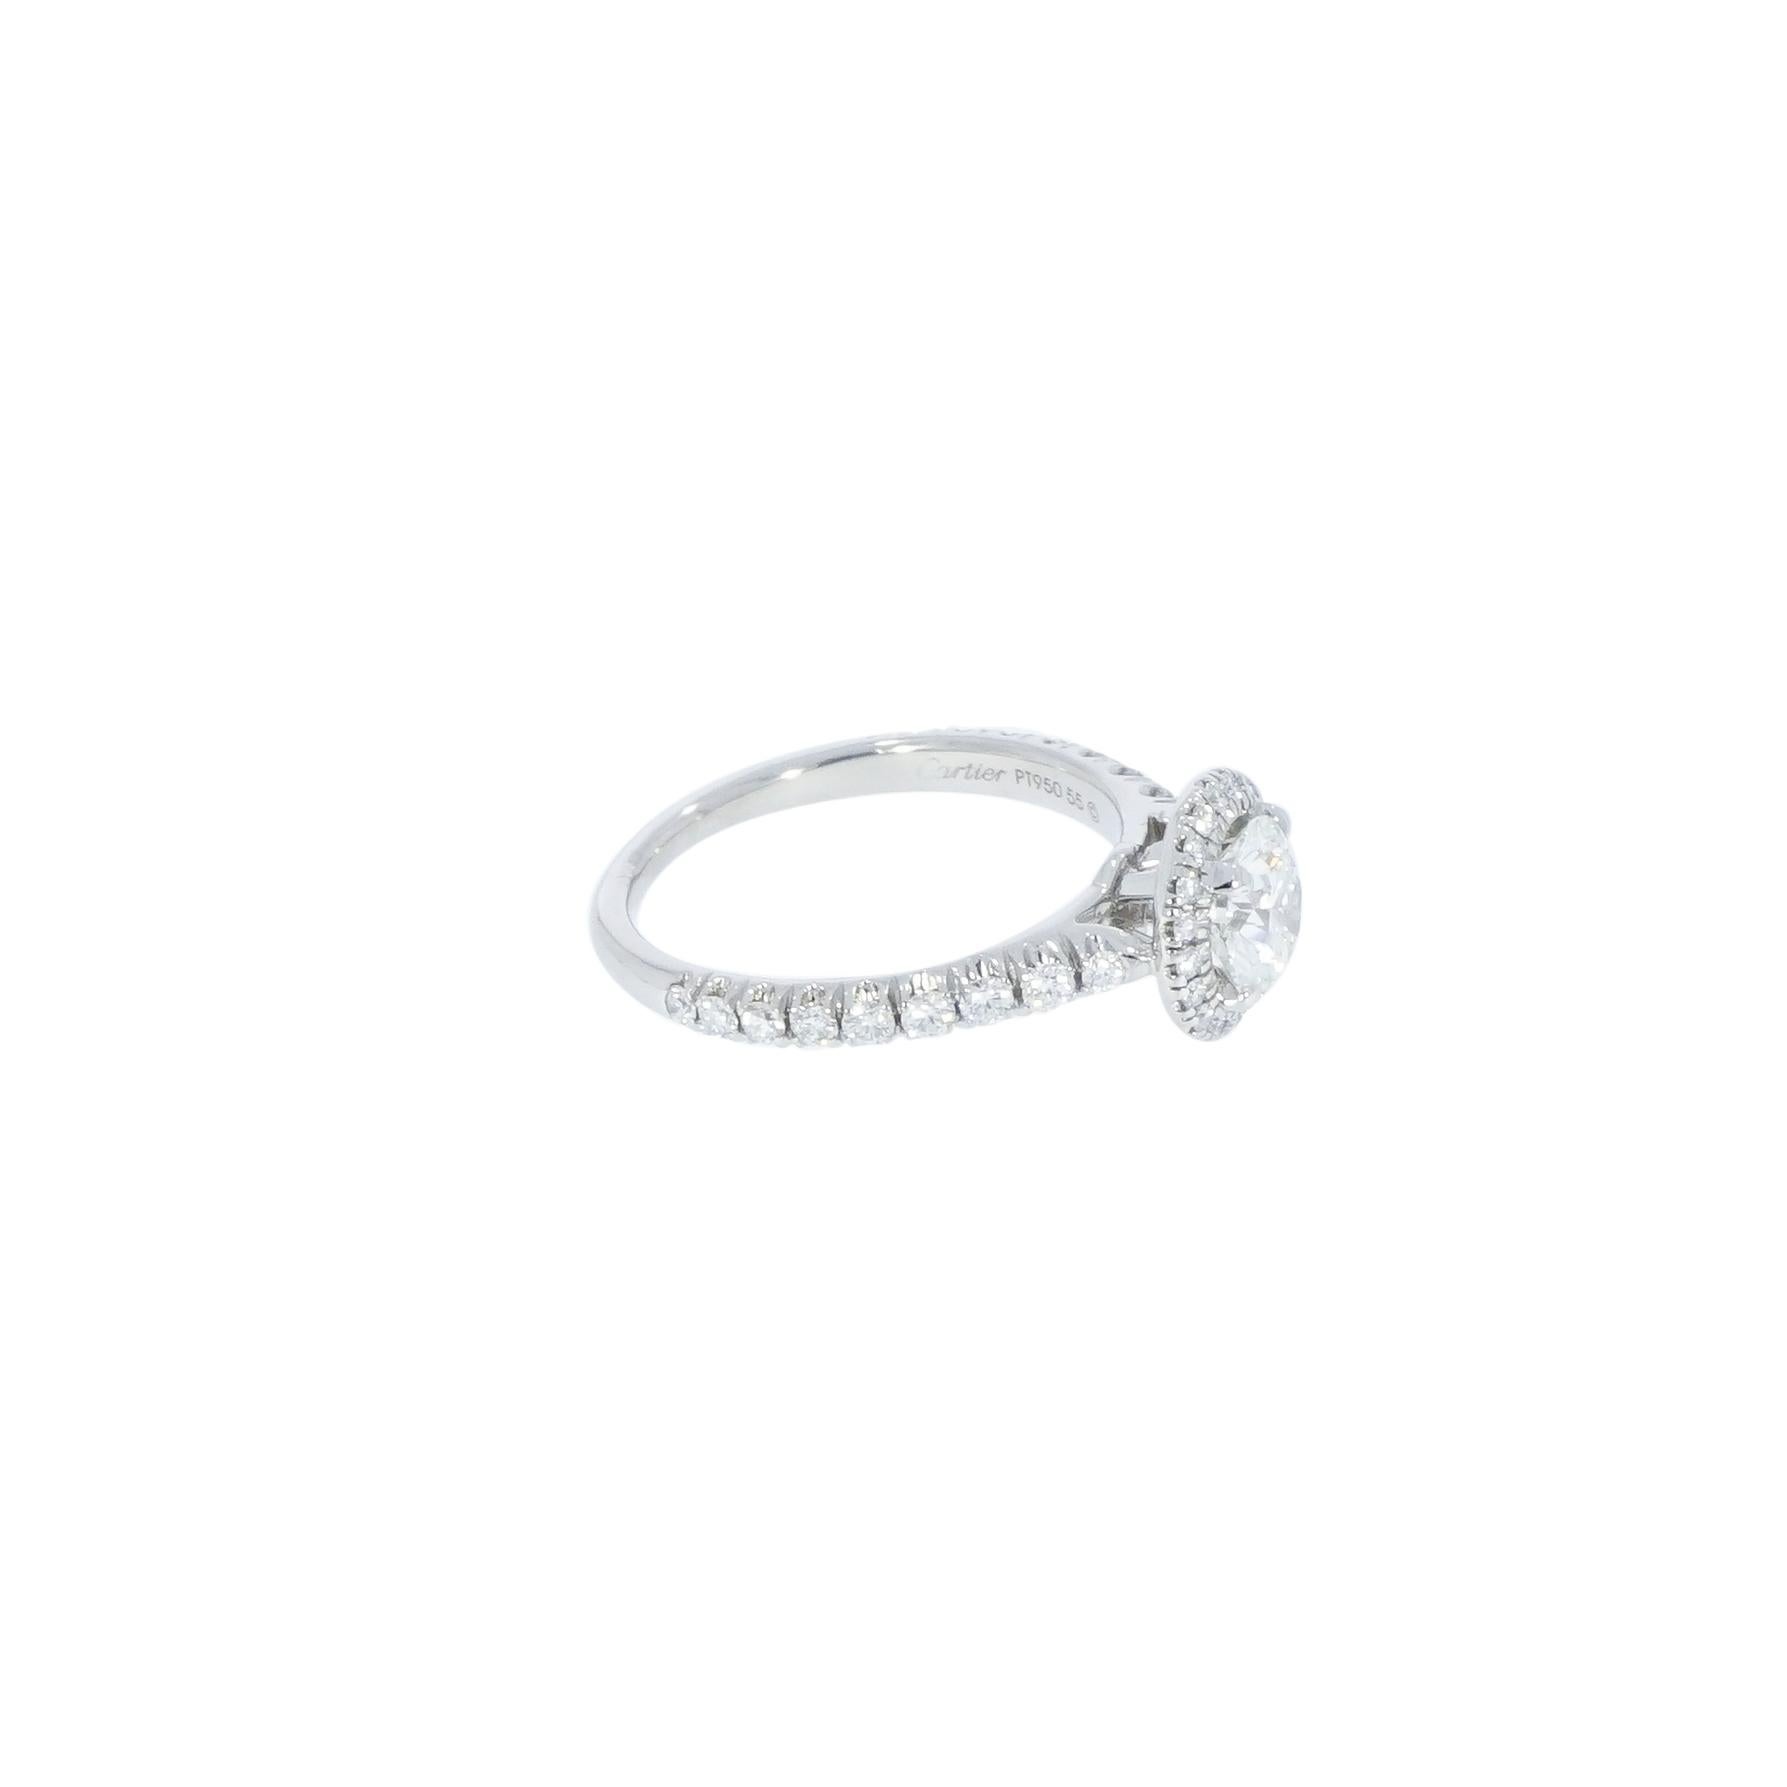 Destinée, ein wunderschöner, von Cartier entworfener Diamant-Verlobungsring mit einem runden Diamanten von 1,03 Karat, der von einem Halo aus Diamanten umrahmt wird, die ihm eine außergewöhnliche Ausstrahlung verleihen. 
Dieser Ring entfaltet sich